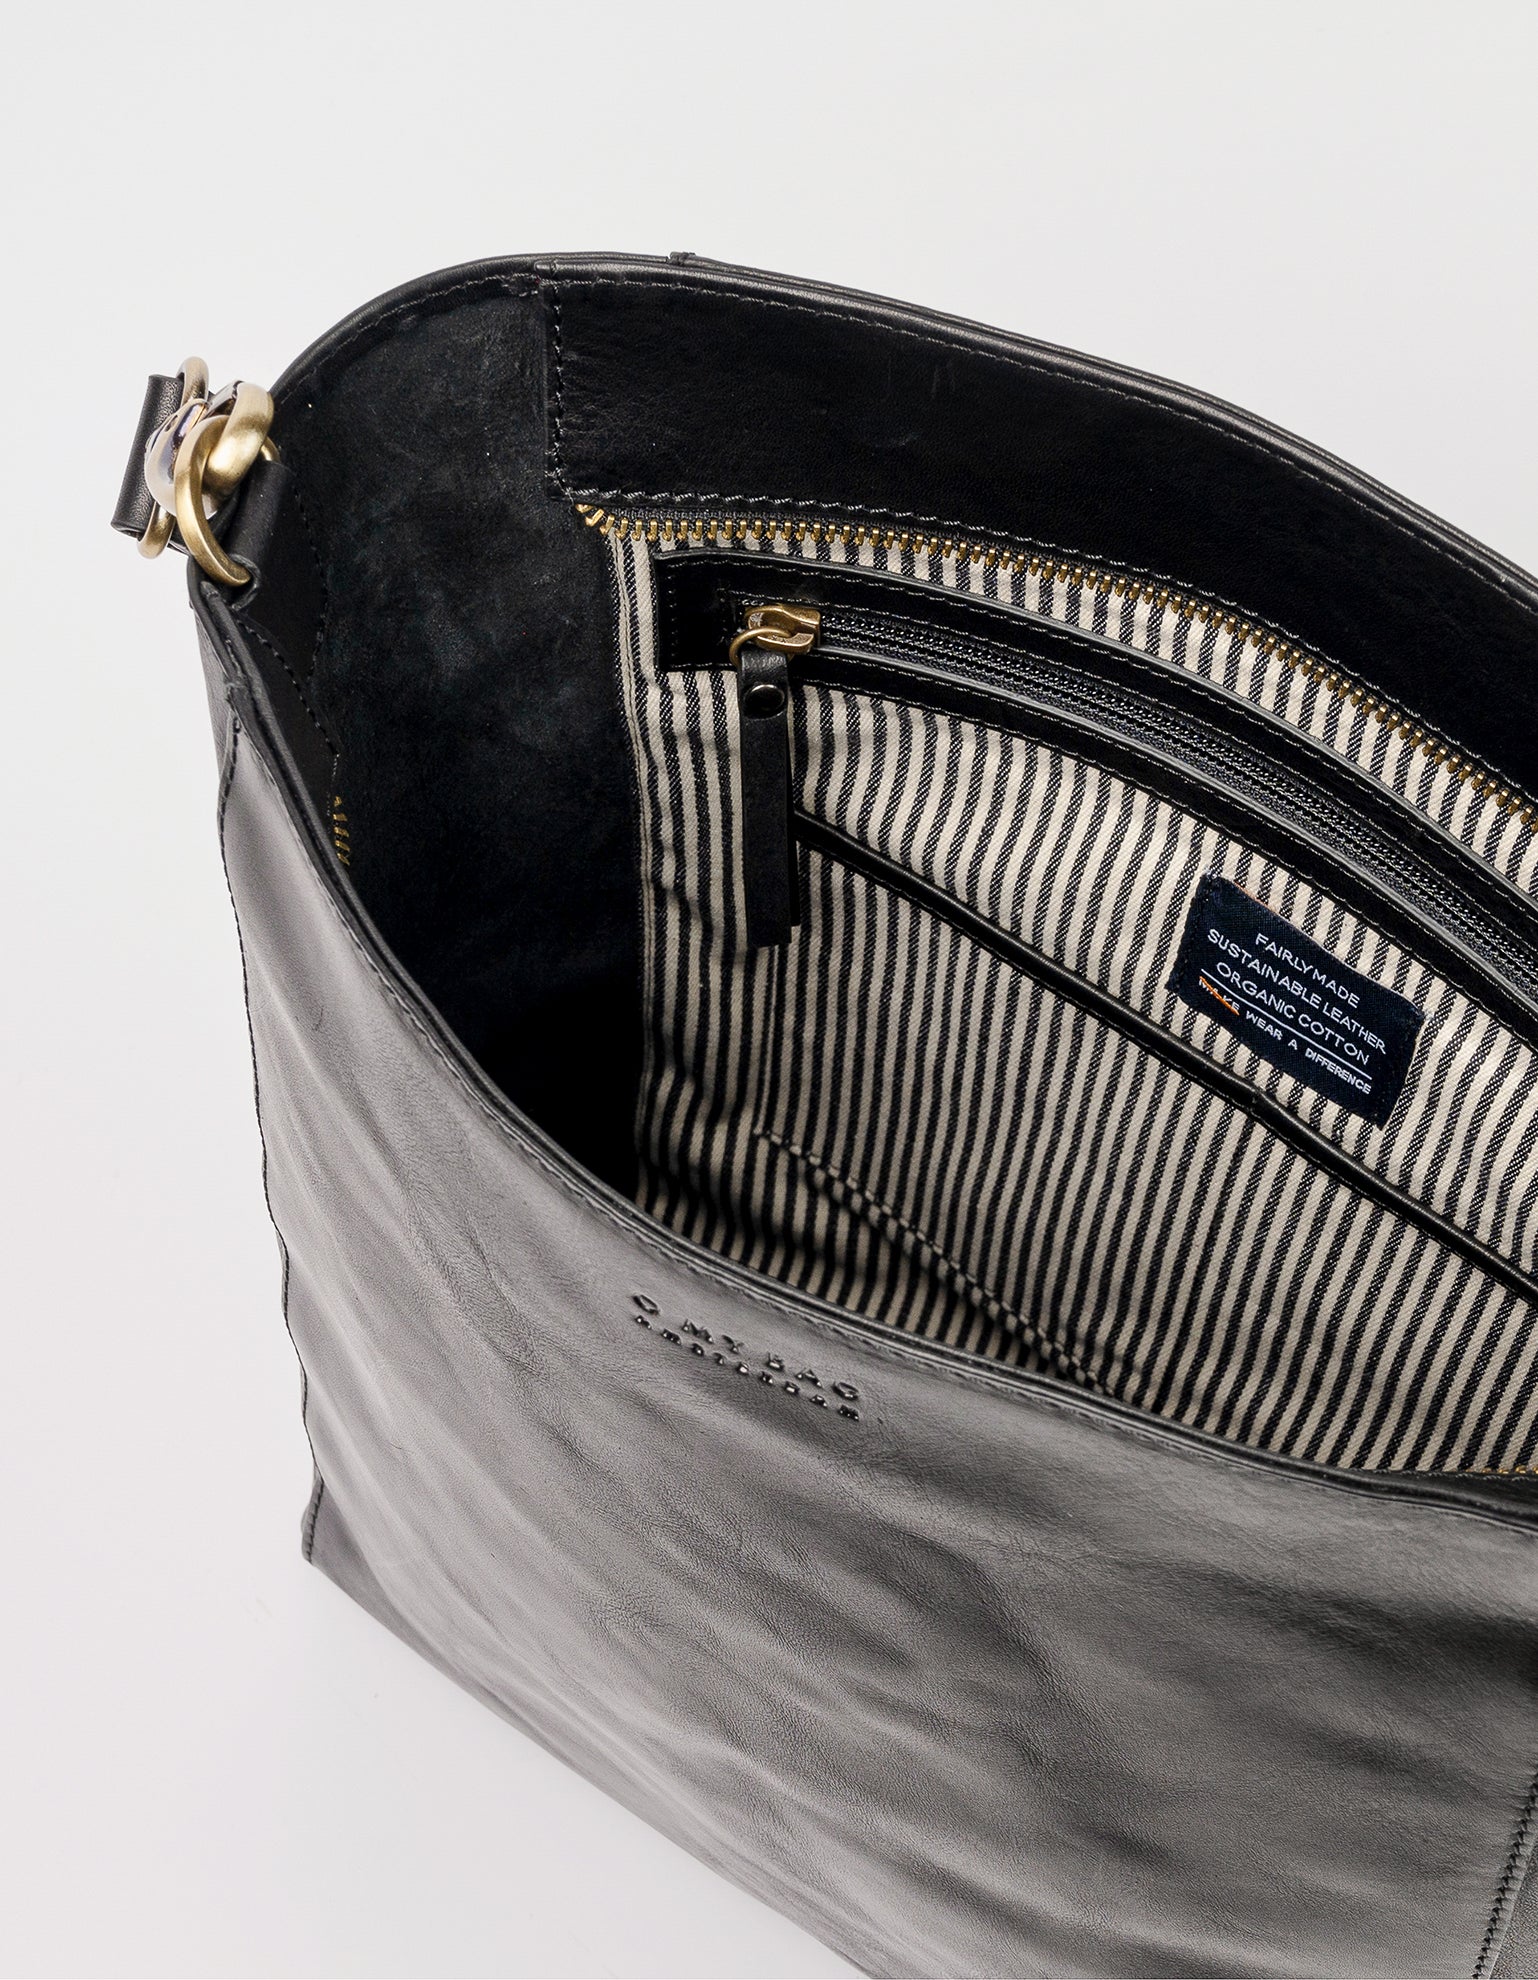 Sofia - Black Stromboli Leather - inside product image